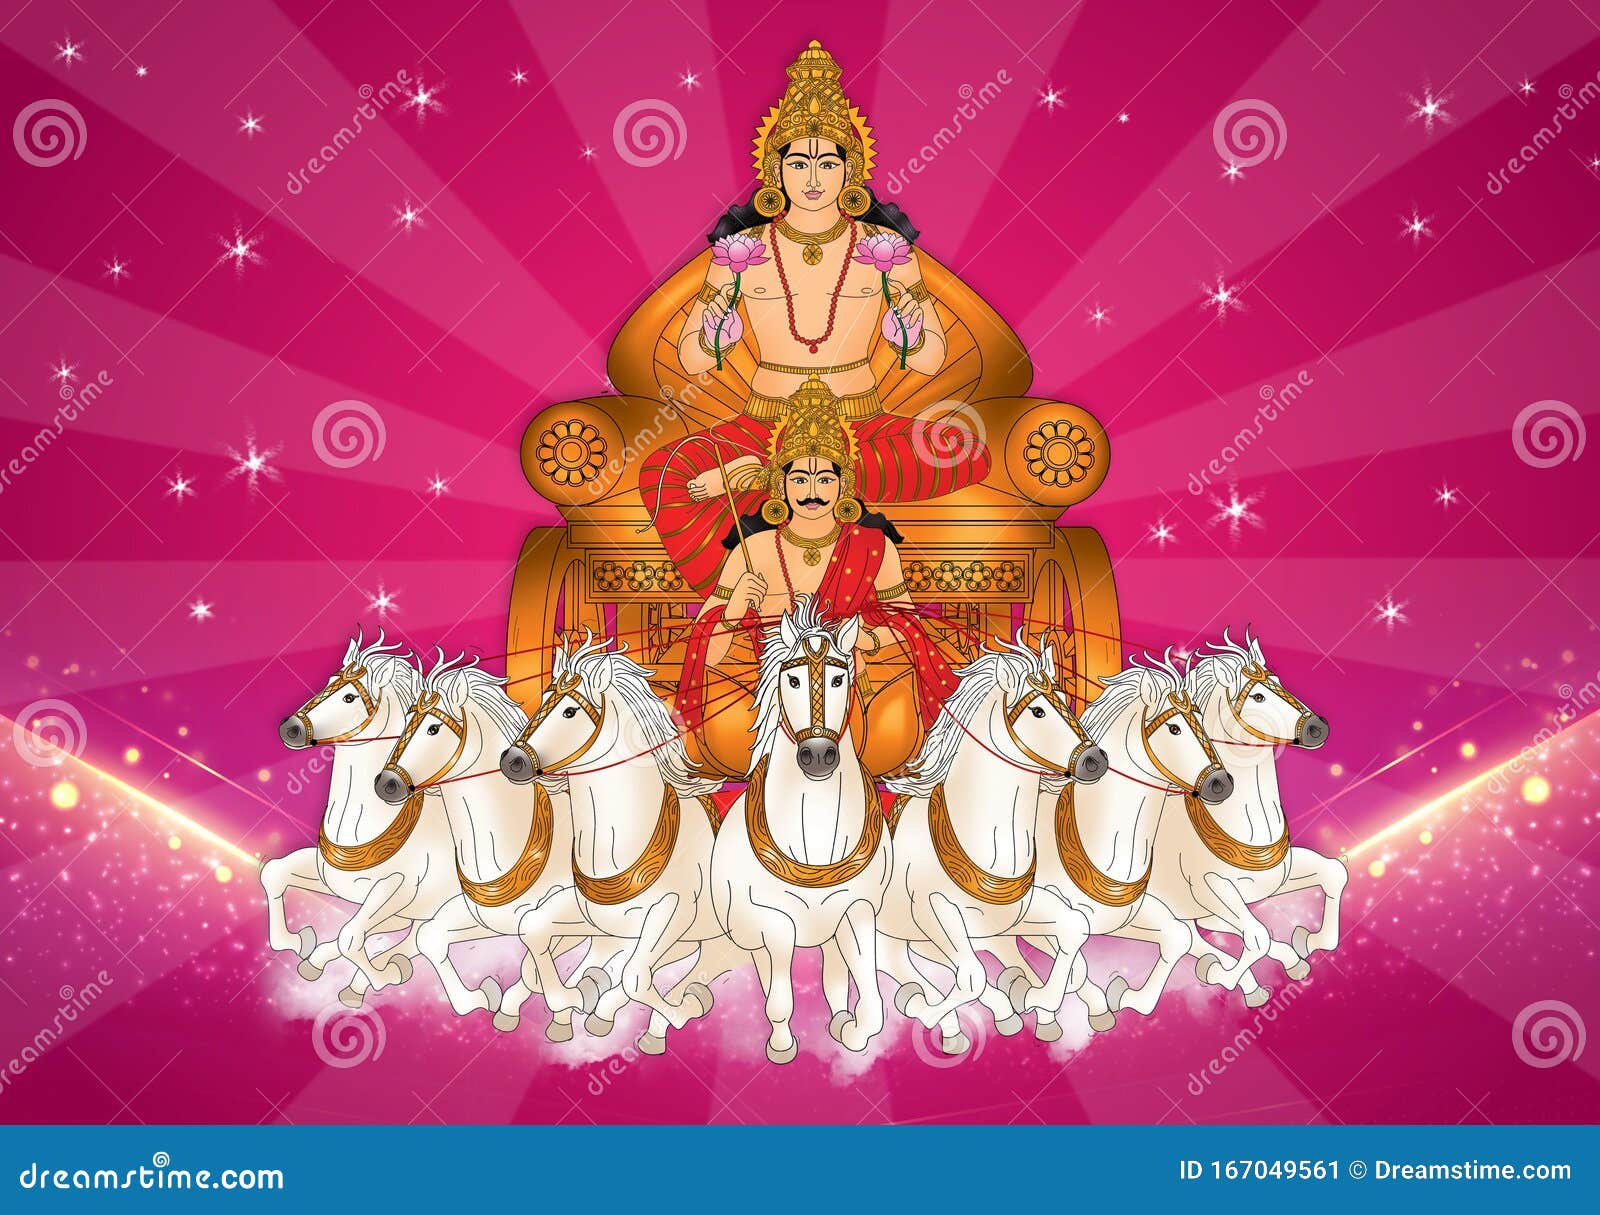 Resplendent Soorya Bhagwan Or Sun God On His Chariot Stock Illustration Illustration Of Resplendent Soorya 167049561